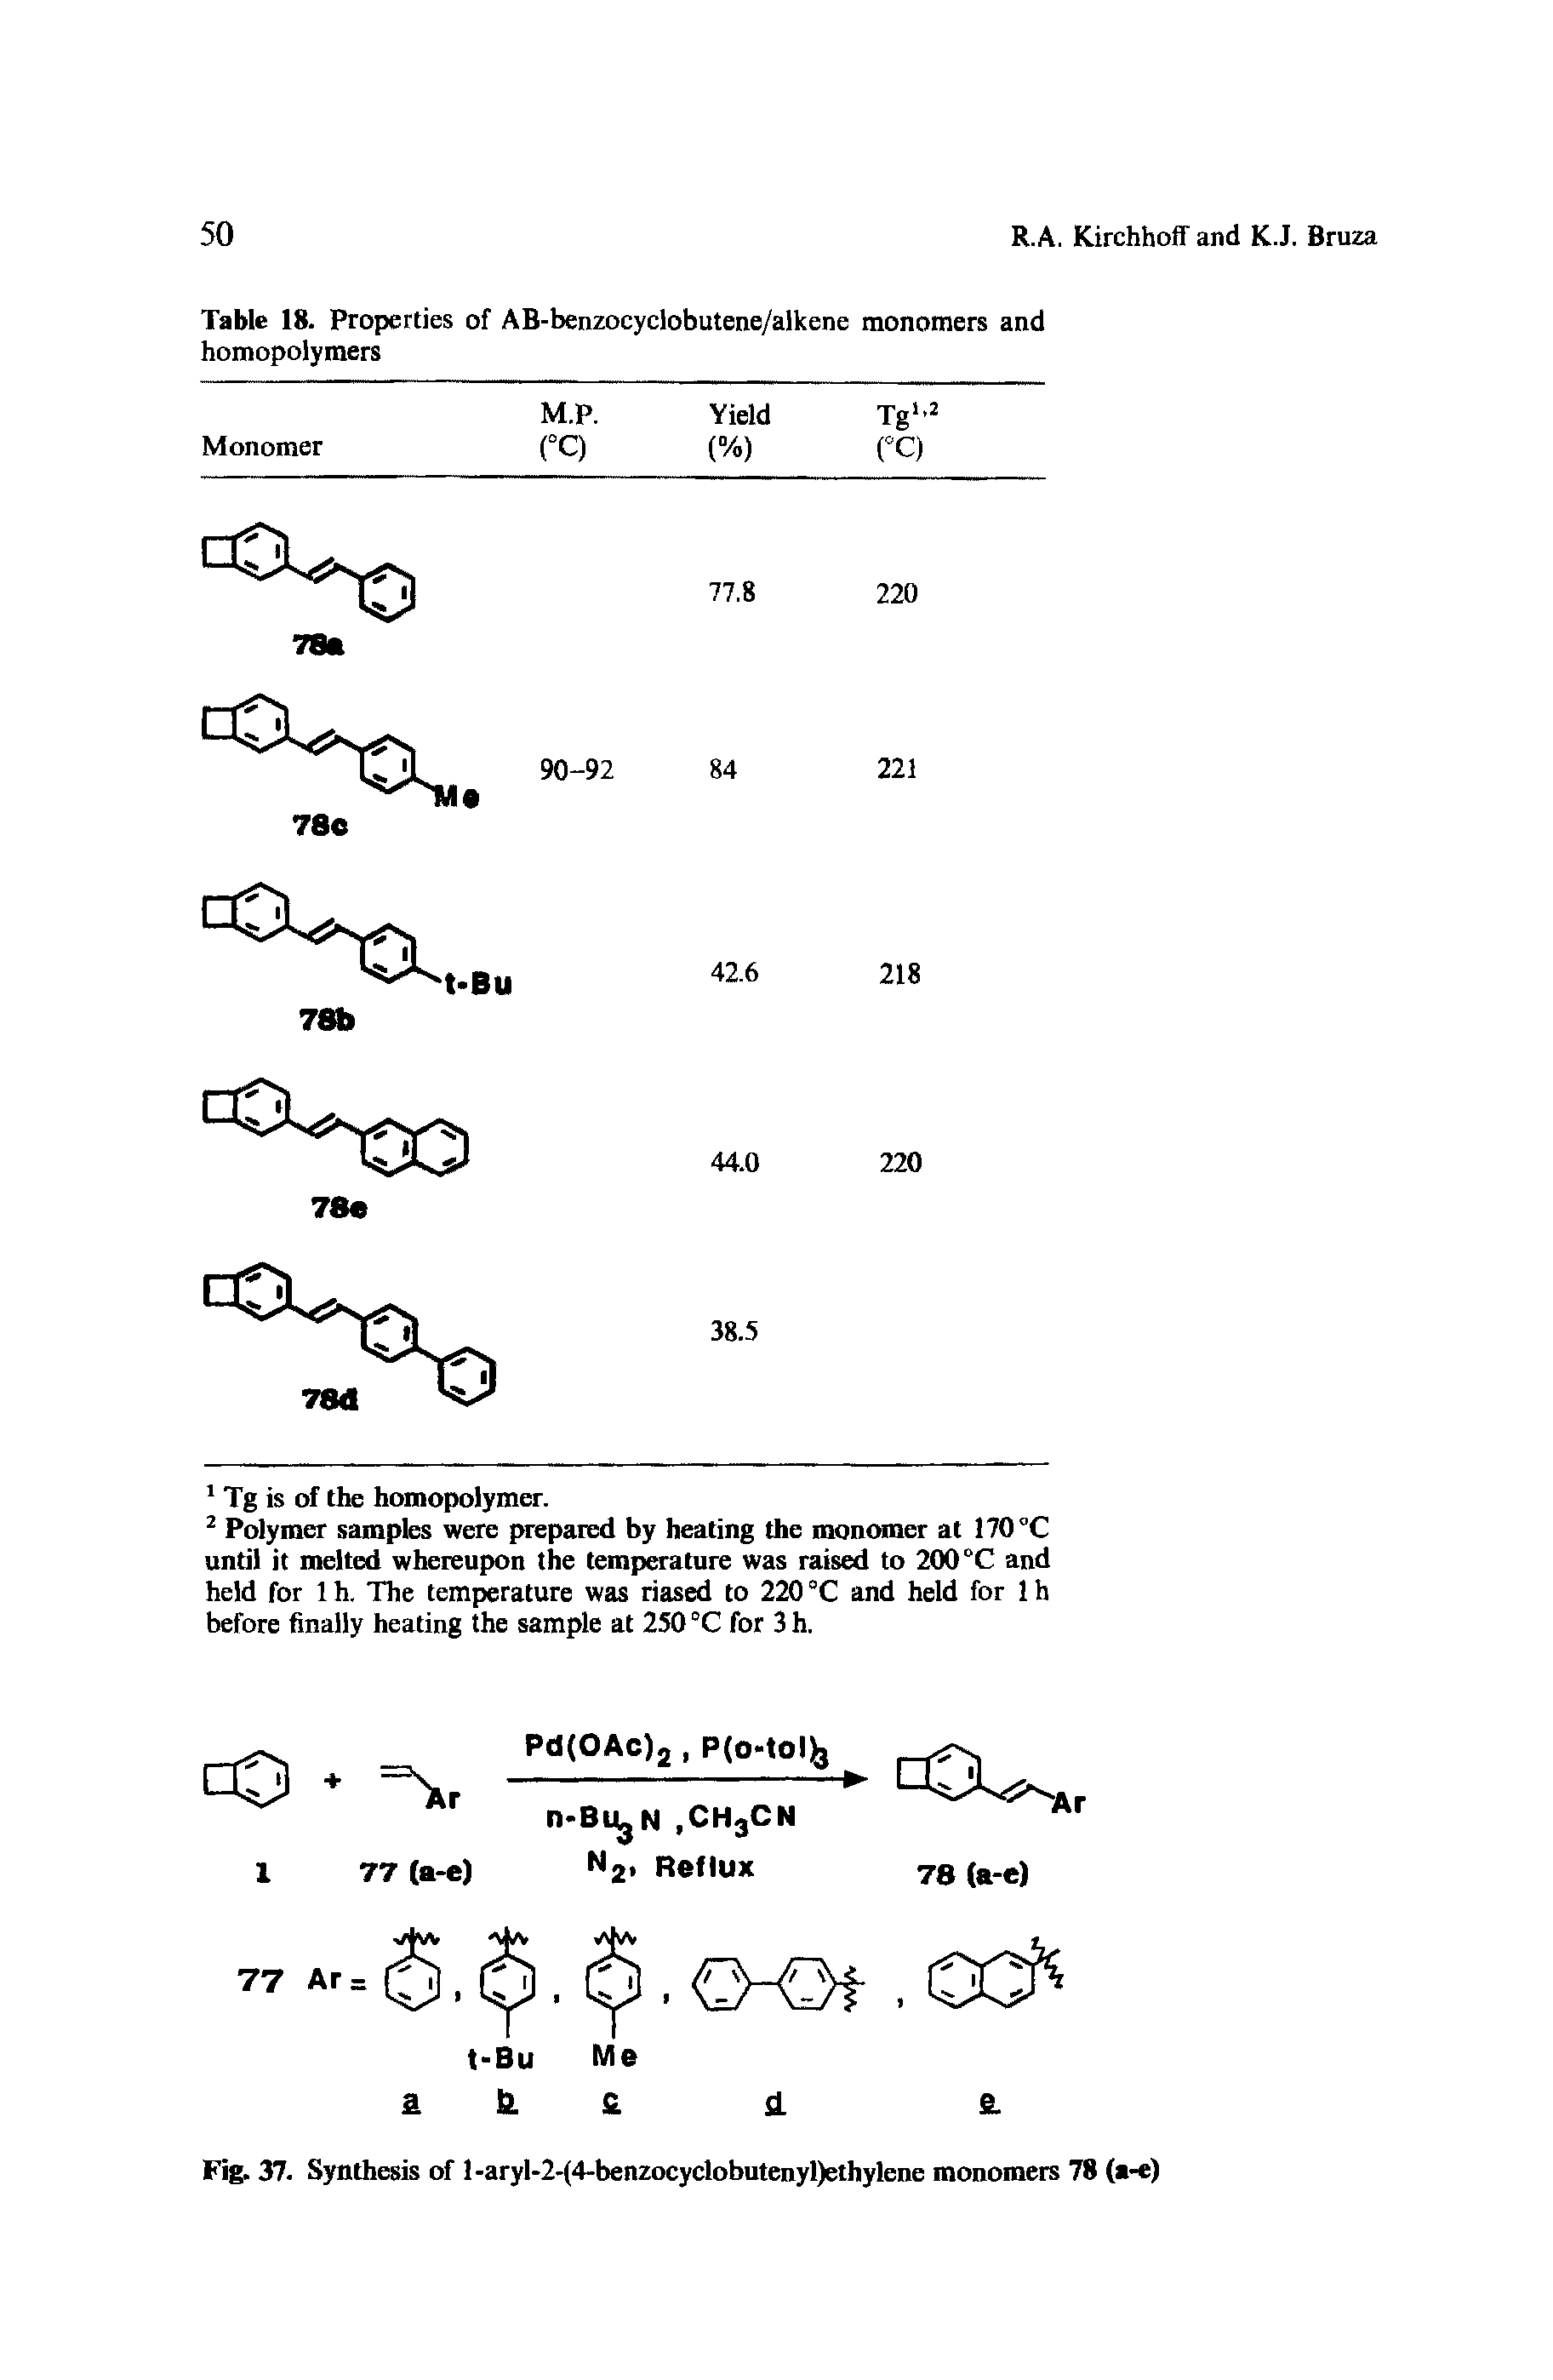 Table 18. Properties of AB-benzocyclobutene/alkene monomers and homopolymers...